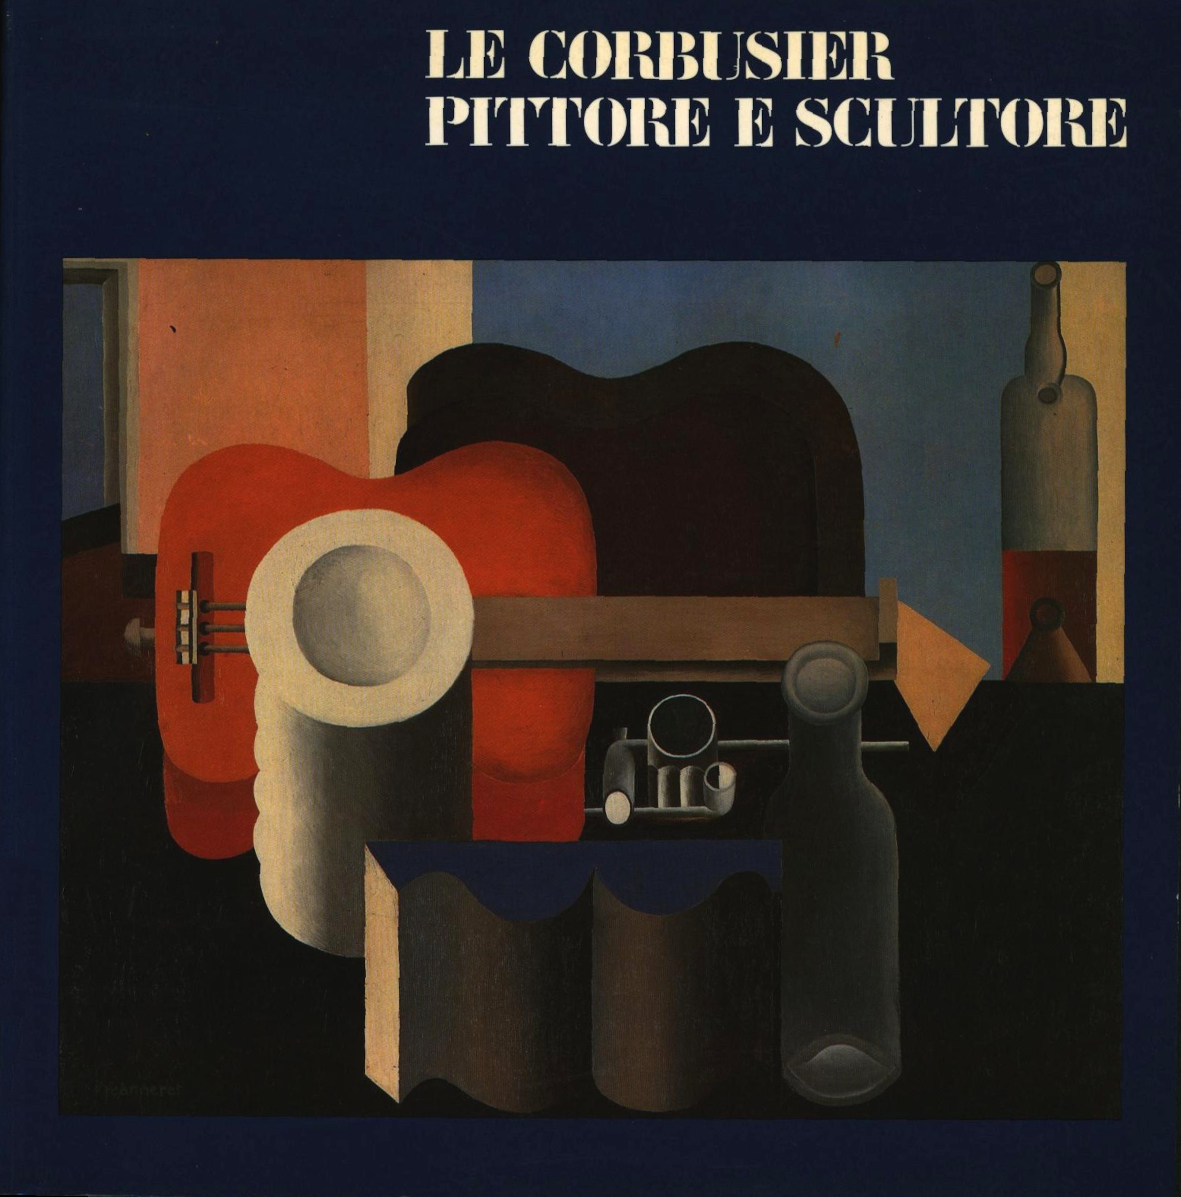 Le Corbusier pittore e scultore (Le Corbusier painter and sculptor)